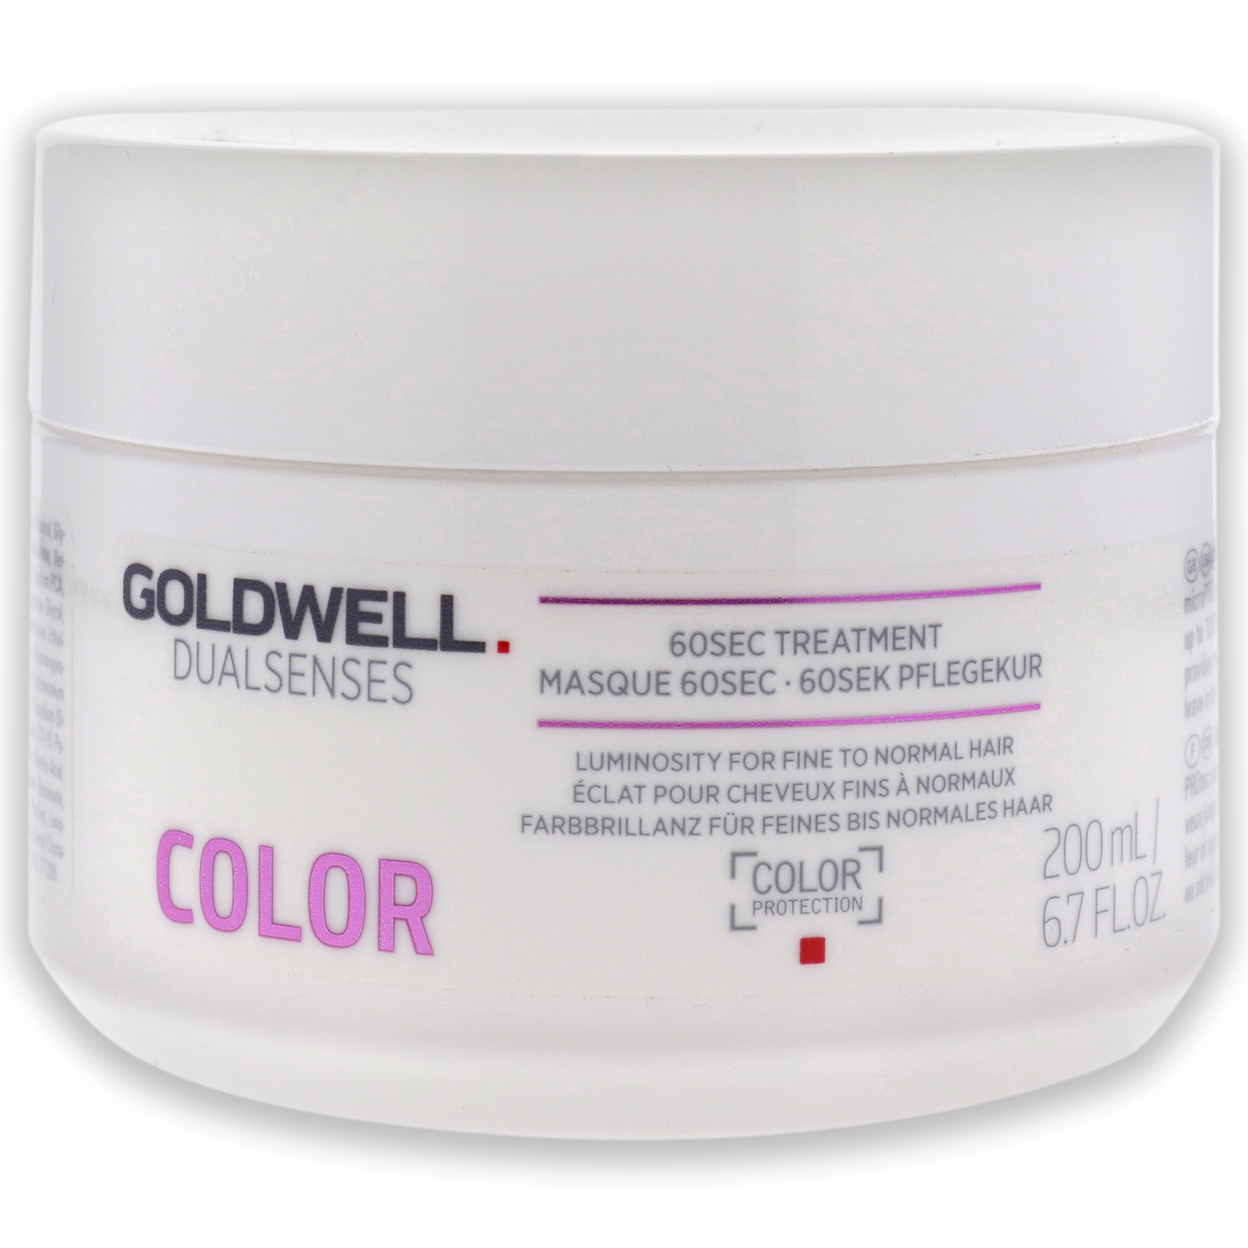 Goldwell Unisex HAIRCARE Dualsenses Color 60Sec Treatment 6.7 Oz